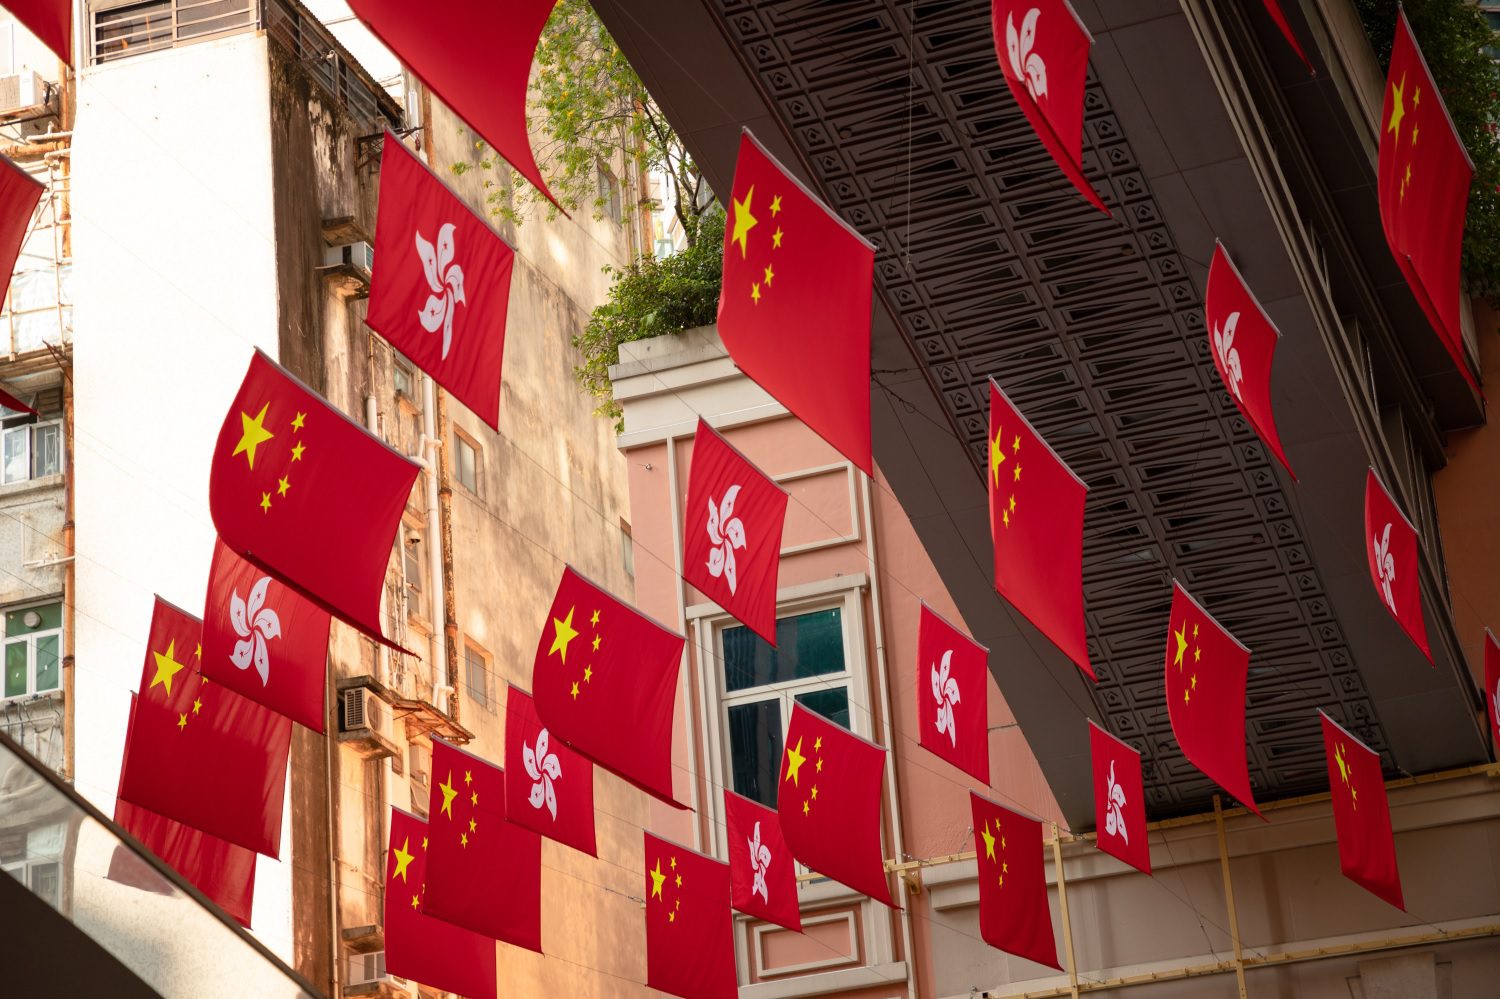 Banderas de la República Popular y de Hong Kong cuelgan en una calle pública.